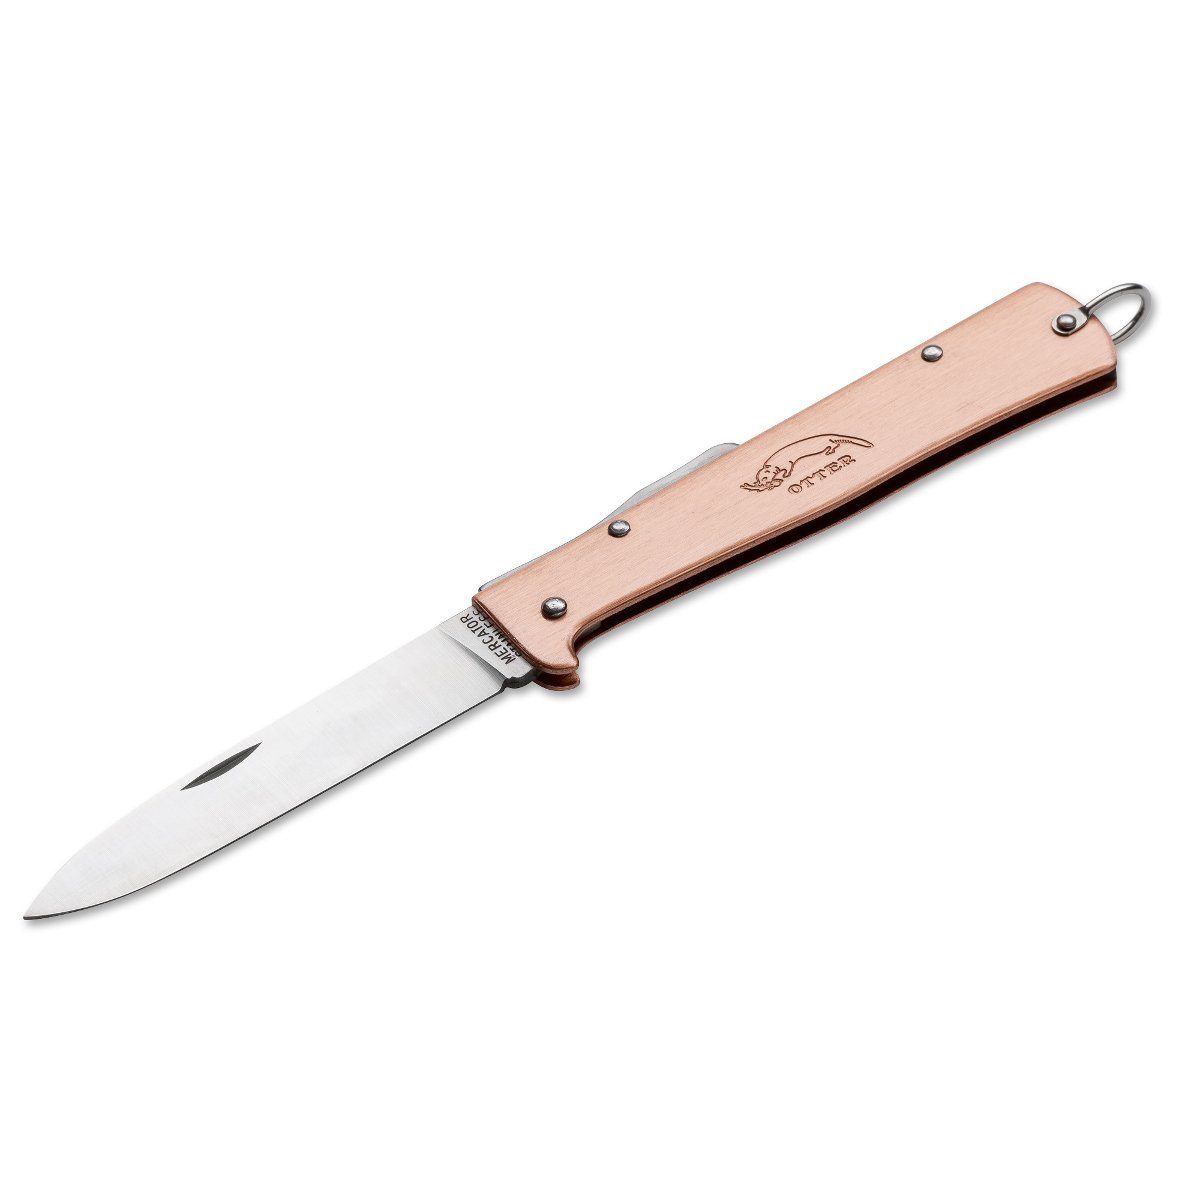 Otter Messer Taschenmesser Mercator-Messer groß Kupfer mit Clip, Klinge rostfrei, Backlock | Taschenmesser